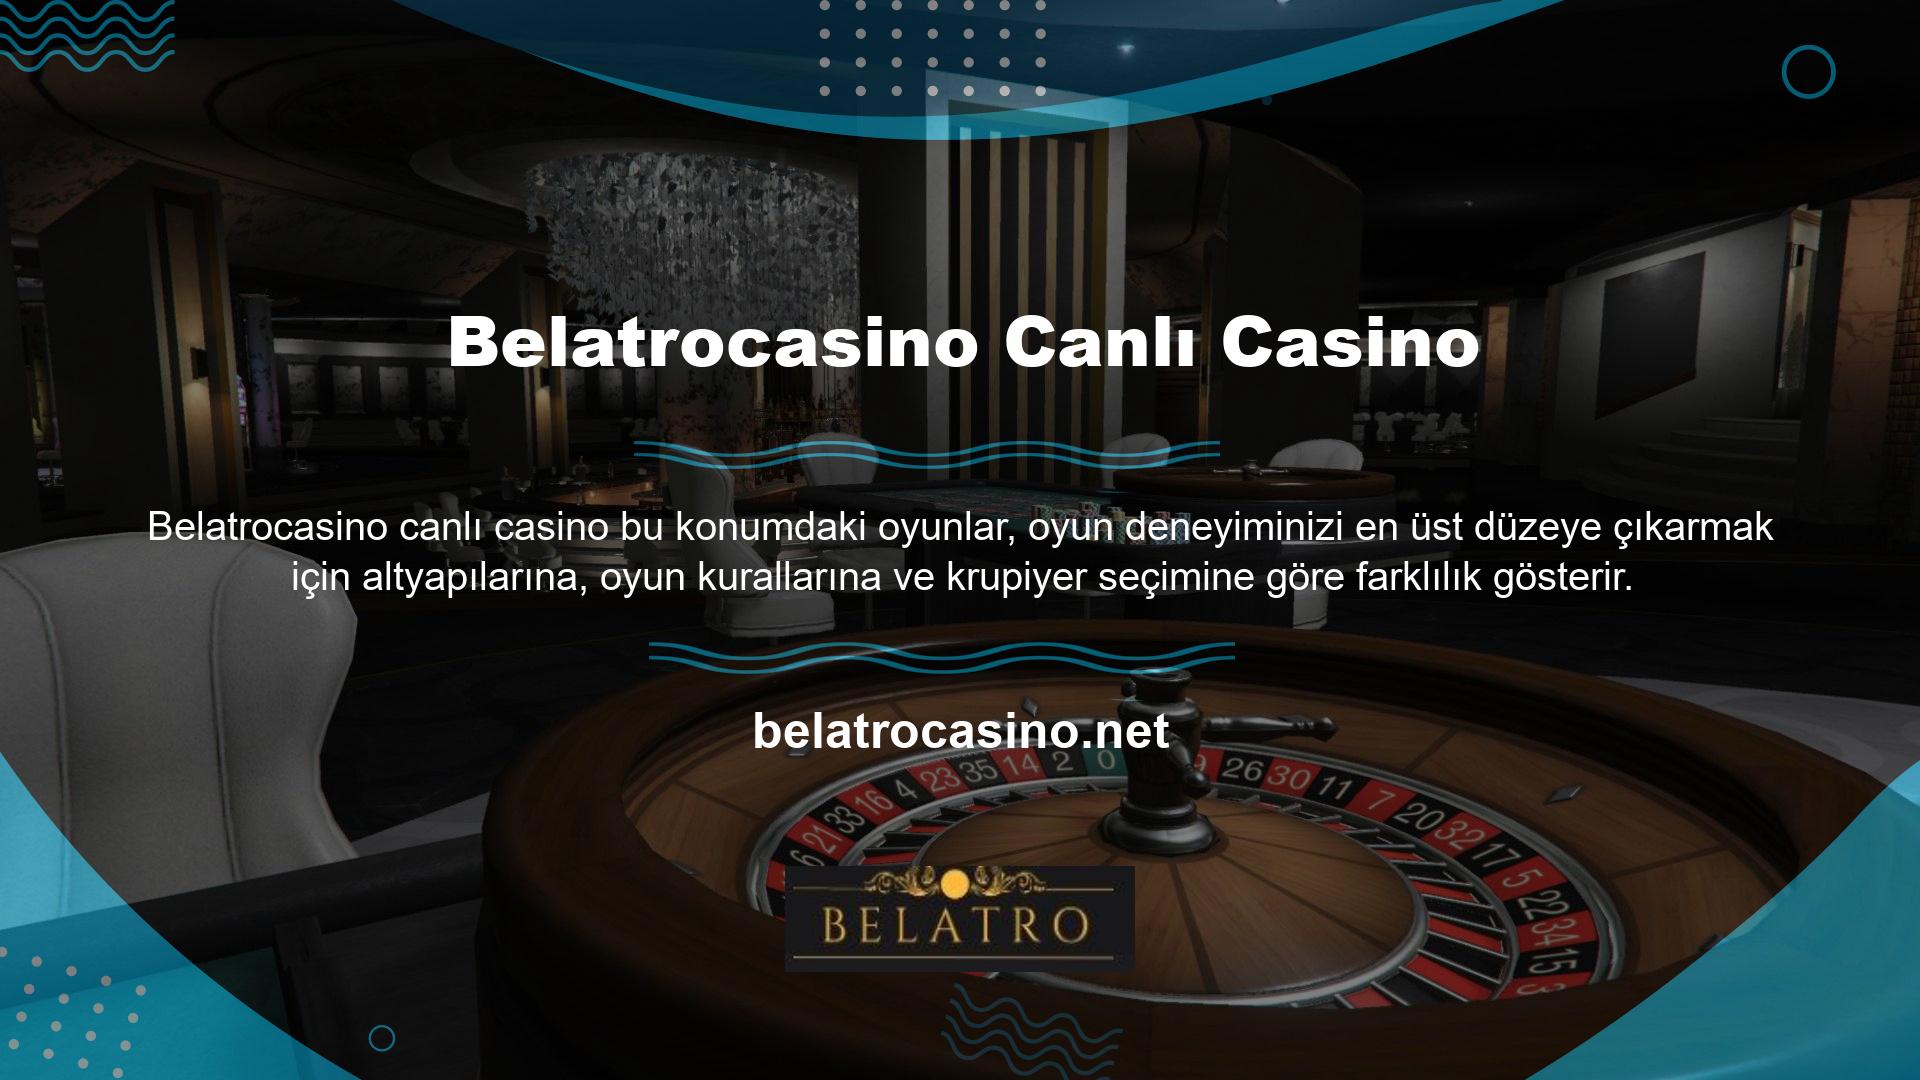 Belatrocasino Canlı Casino çeşitli oyun seçenekleri sunar